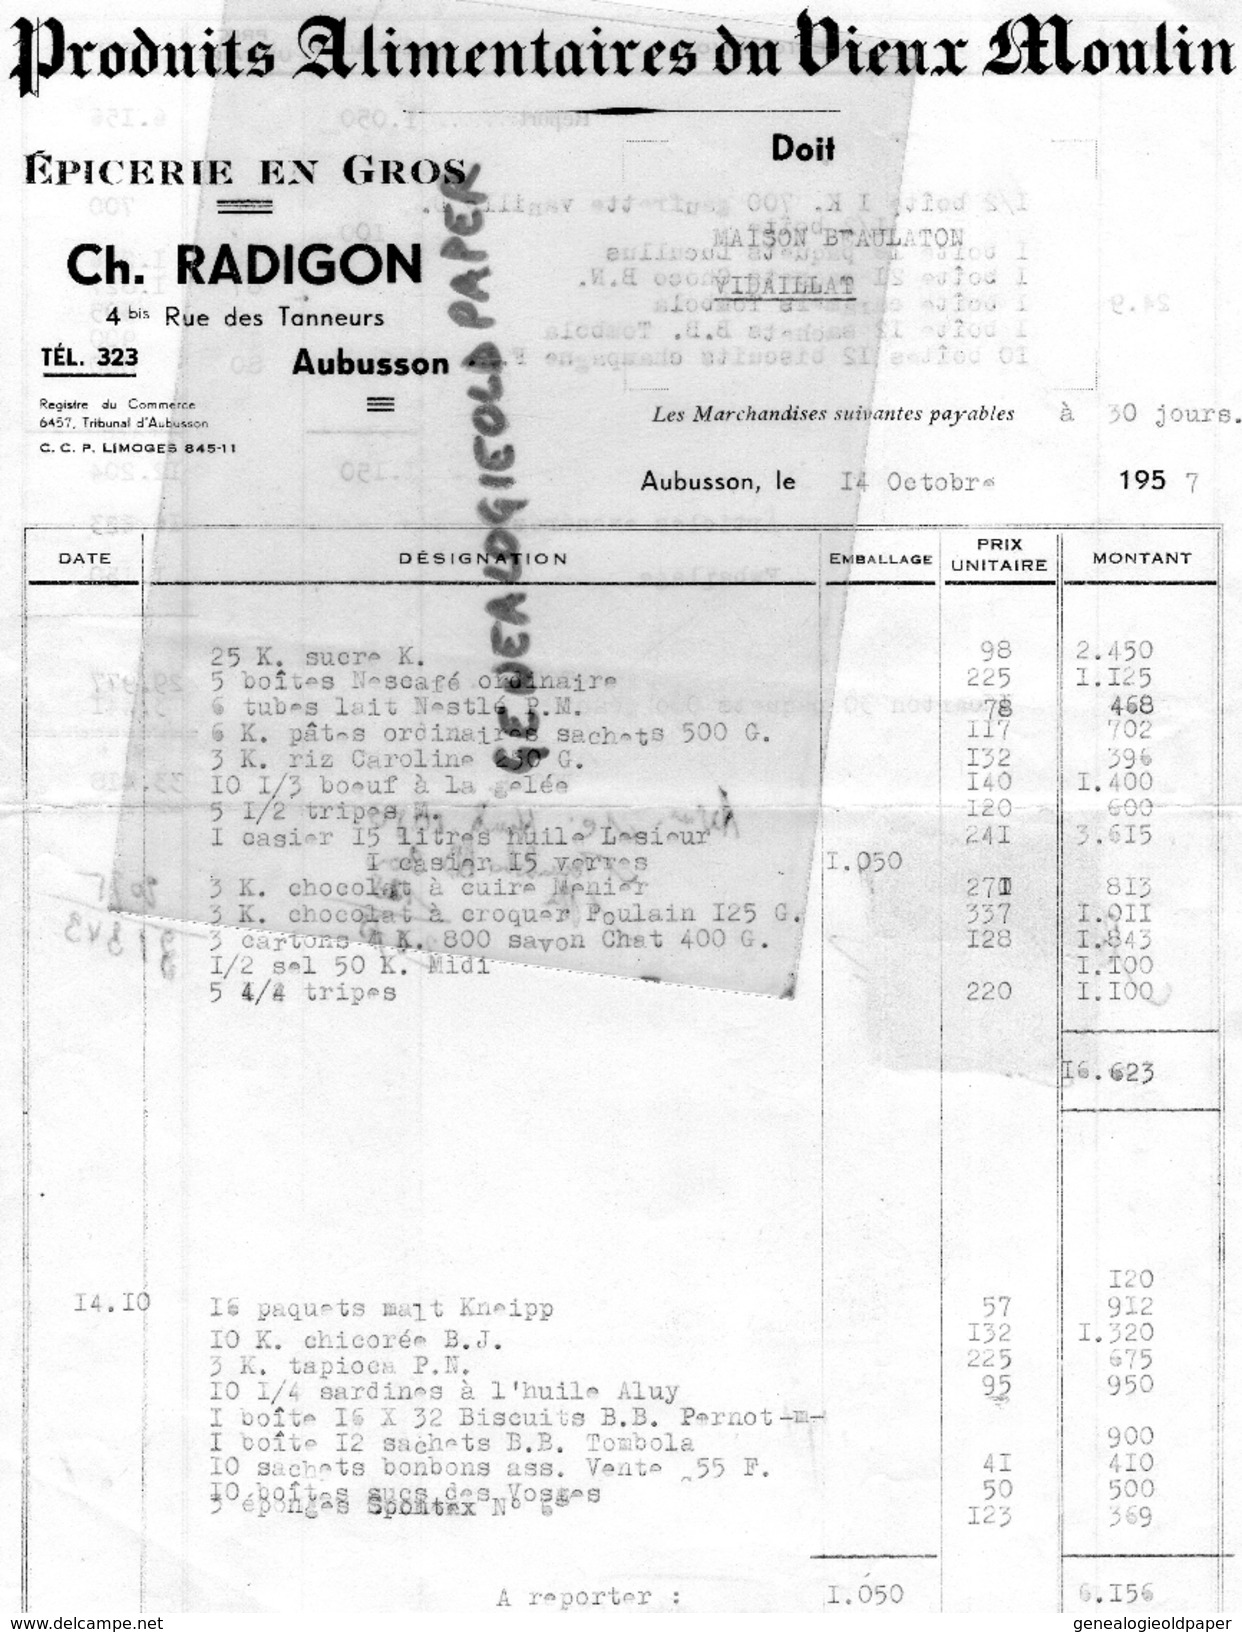 23 - AUBUSSON - FACTURE EPICERIE CH. RADIGON- PRODUITS ALIMENTAIRES DU VIEUX MOULIN- 4 RUE DES TANNEURS- 1957 - 1950 - ...